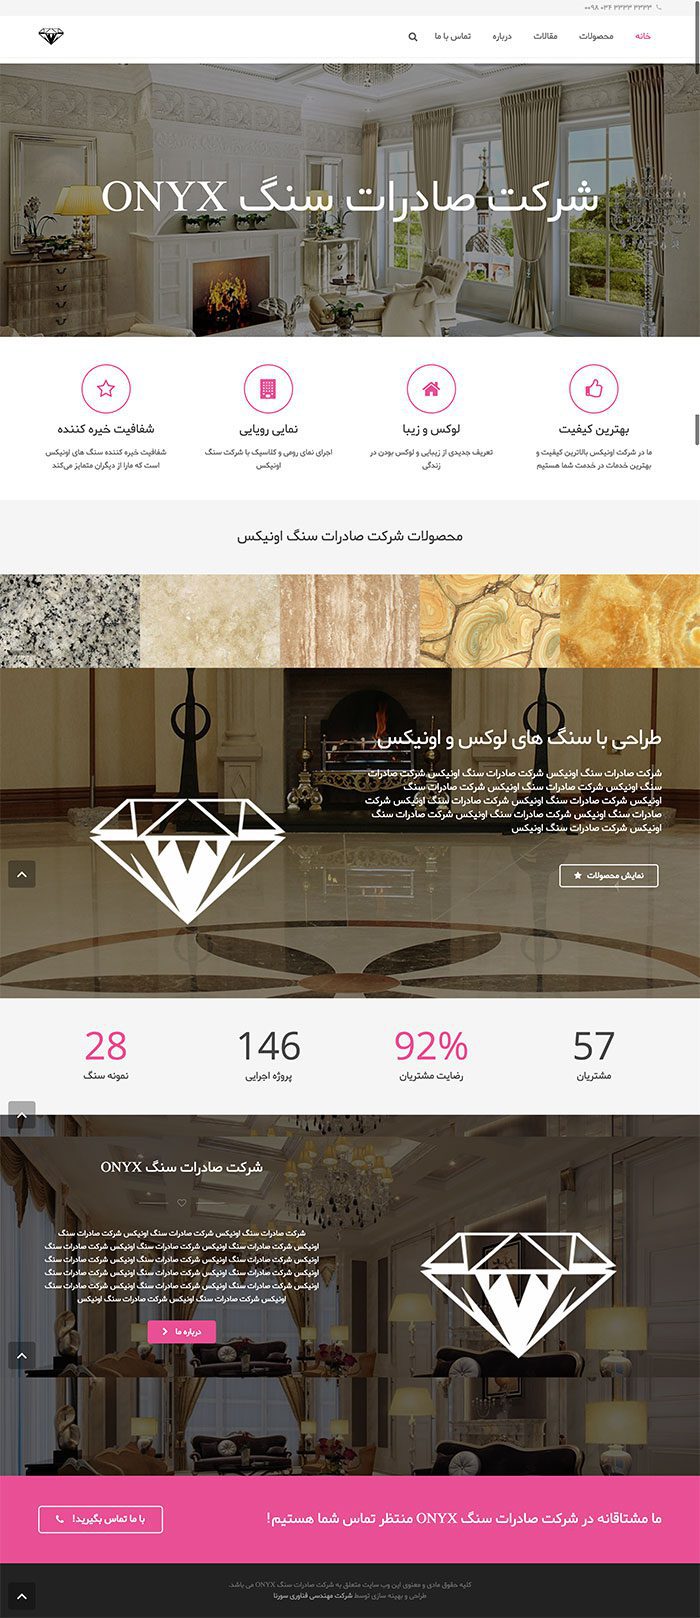 طراحی سایت شرکت صادرات سنگ اونیکس توسط شرکت طراحی سایت سورنا در کرمان